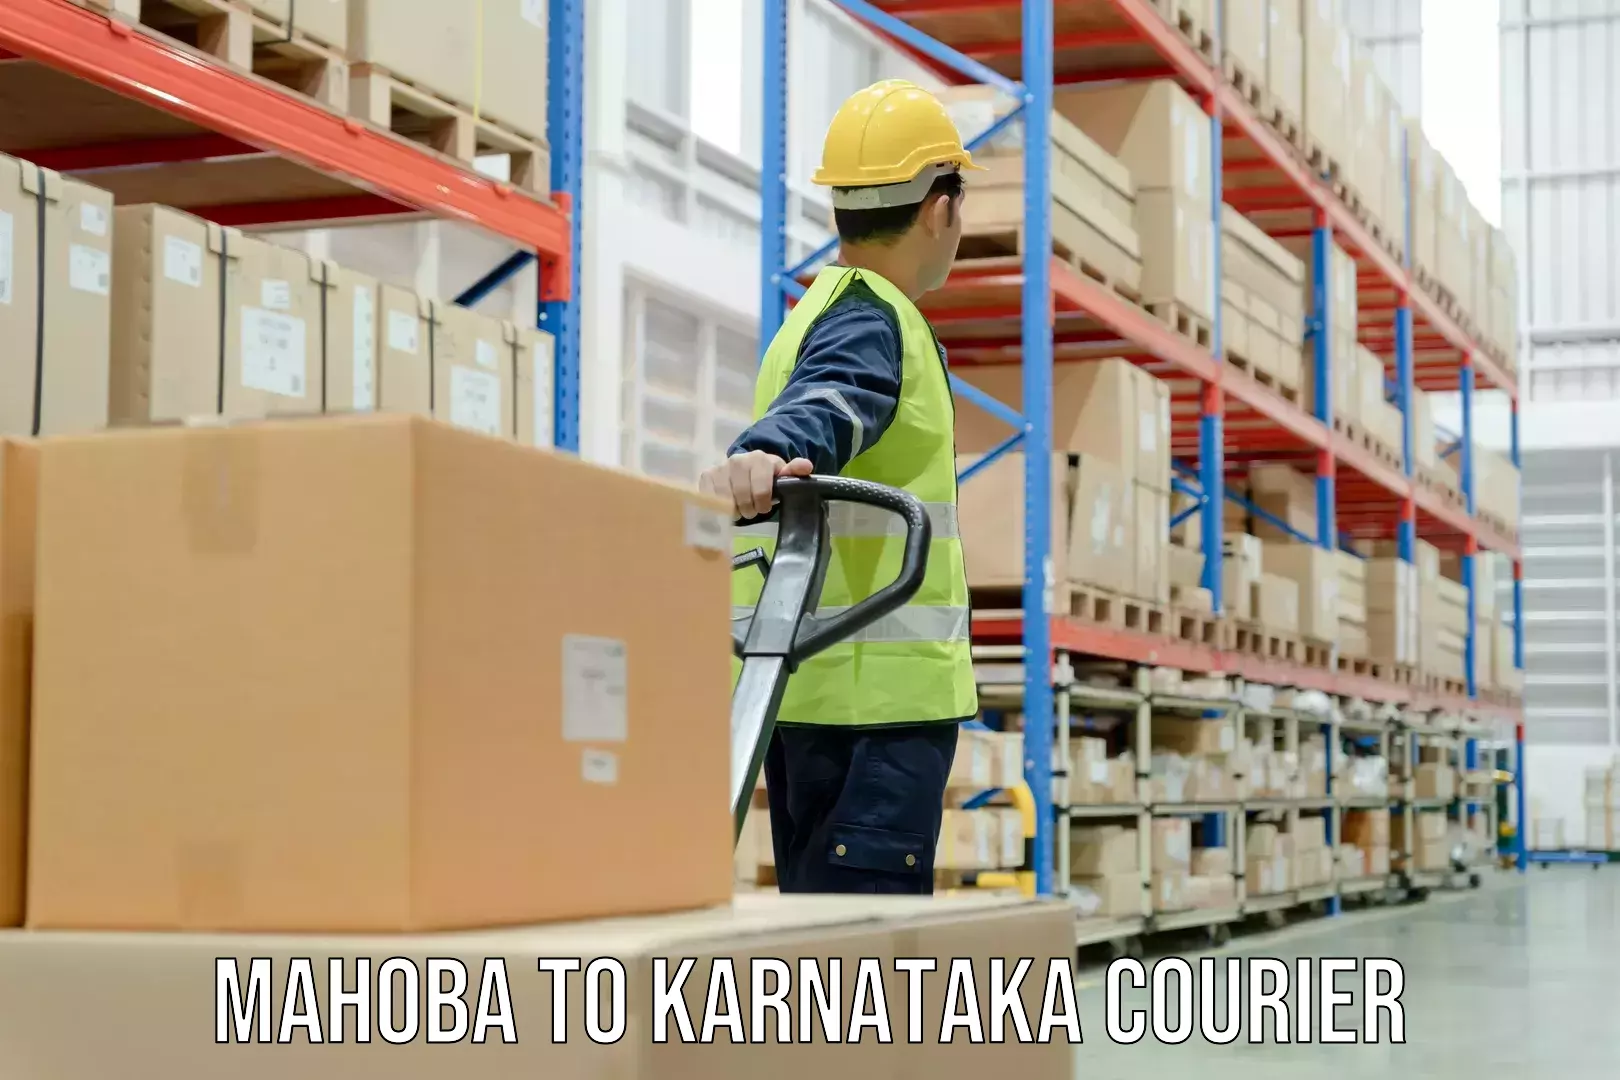 Global delivery options Mahoba to Karnataka